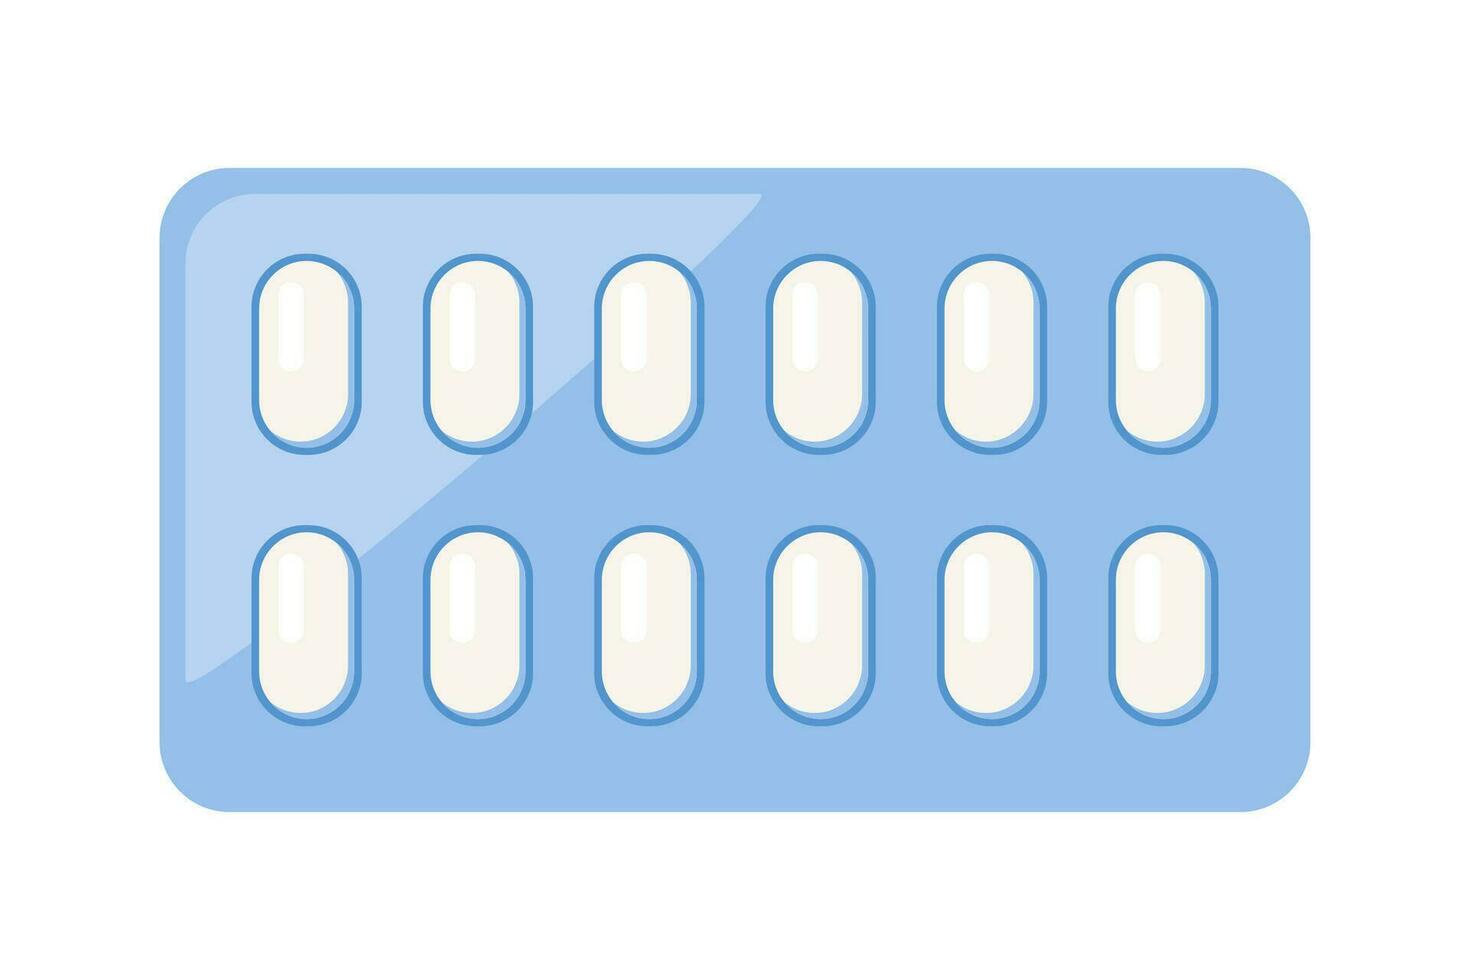 blaar met pillen voor ziekte en pijn behandeling. medisch drug pakket voor tablet, vitamine, antibiotica, aspirine. vector illustratie.